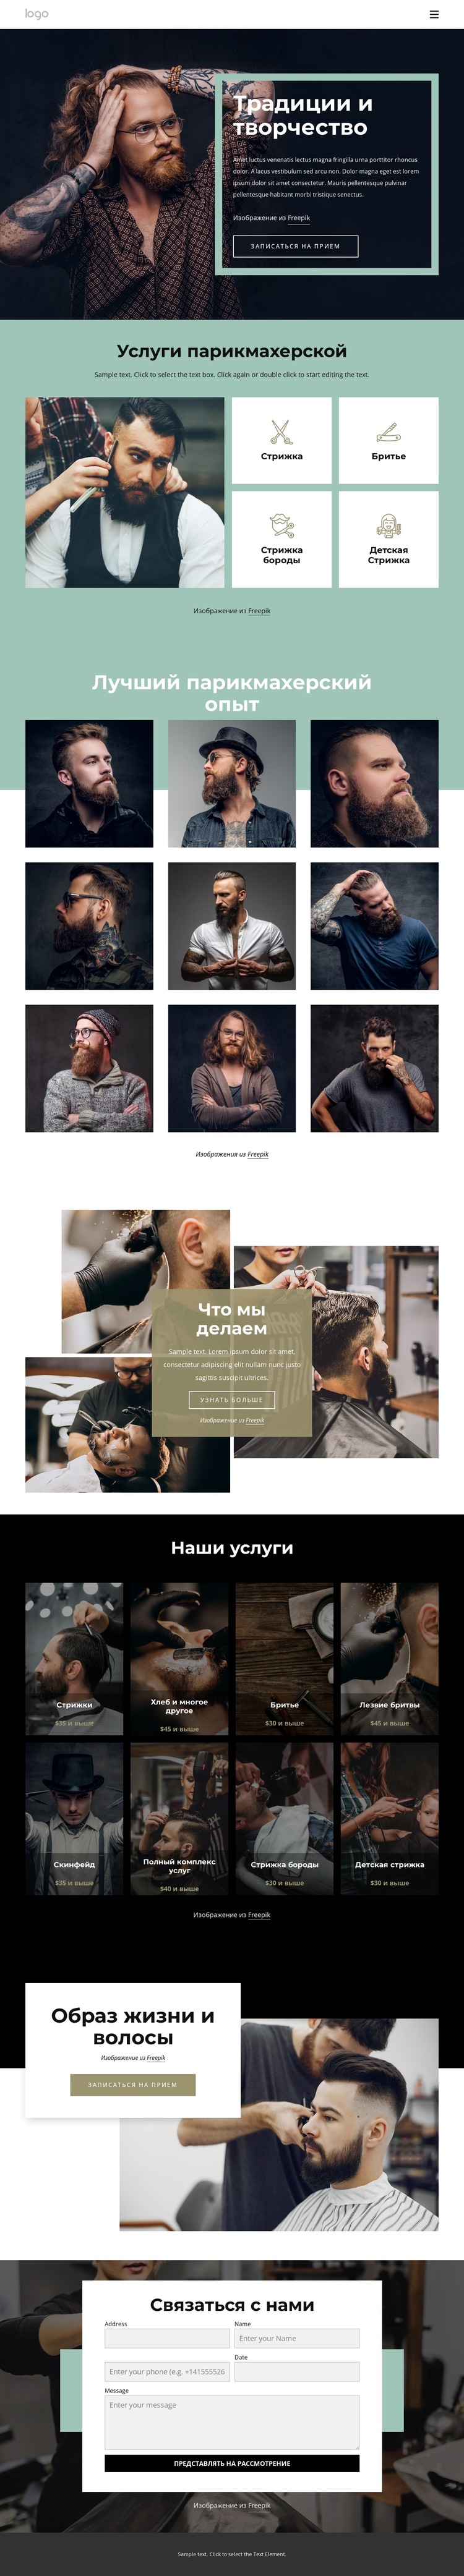 Общественный парикмахерский салон Шаблон веб-сайта